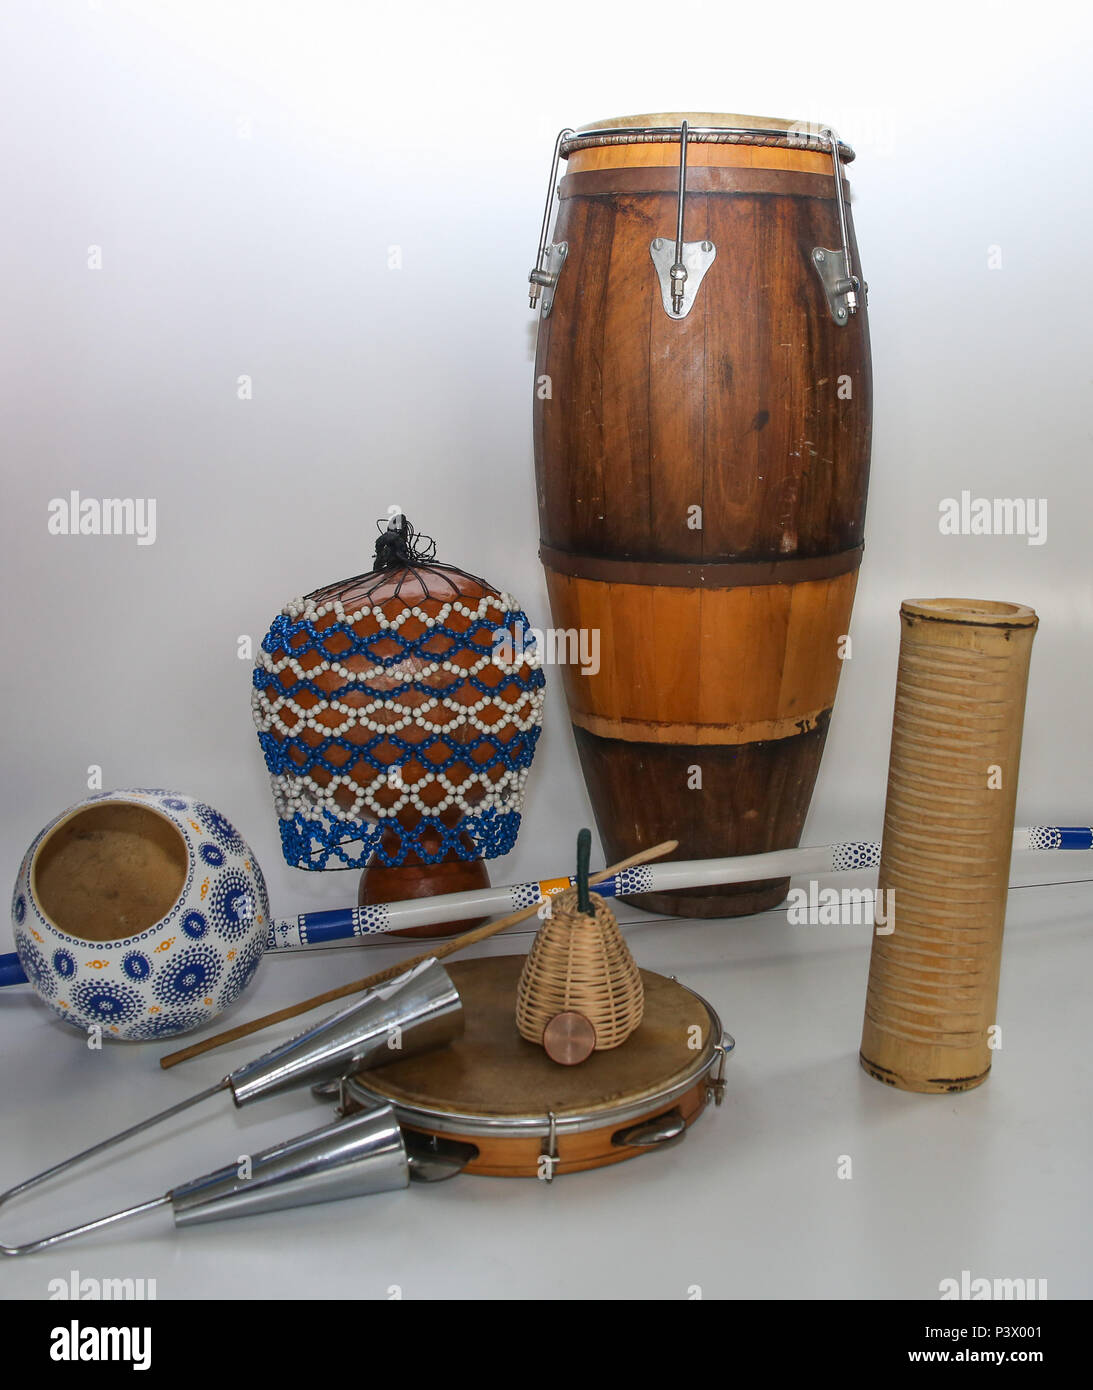 Na foto, xequerê, atabaque, berimbau, agogô, pandeiro, reco-reco e caxixi. Instrumentos musicais utilizados no acompanhamento da capoeira. Stock Photo